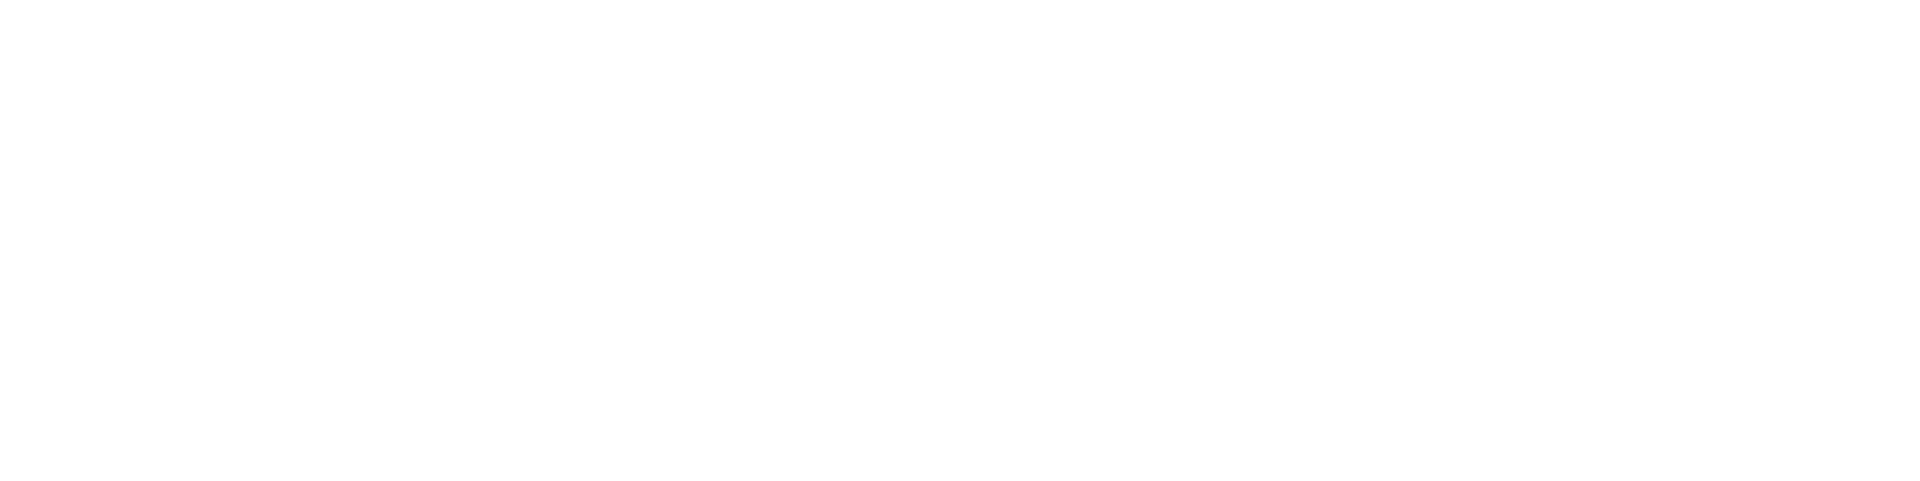 STARRING WHITE